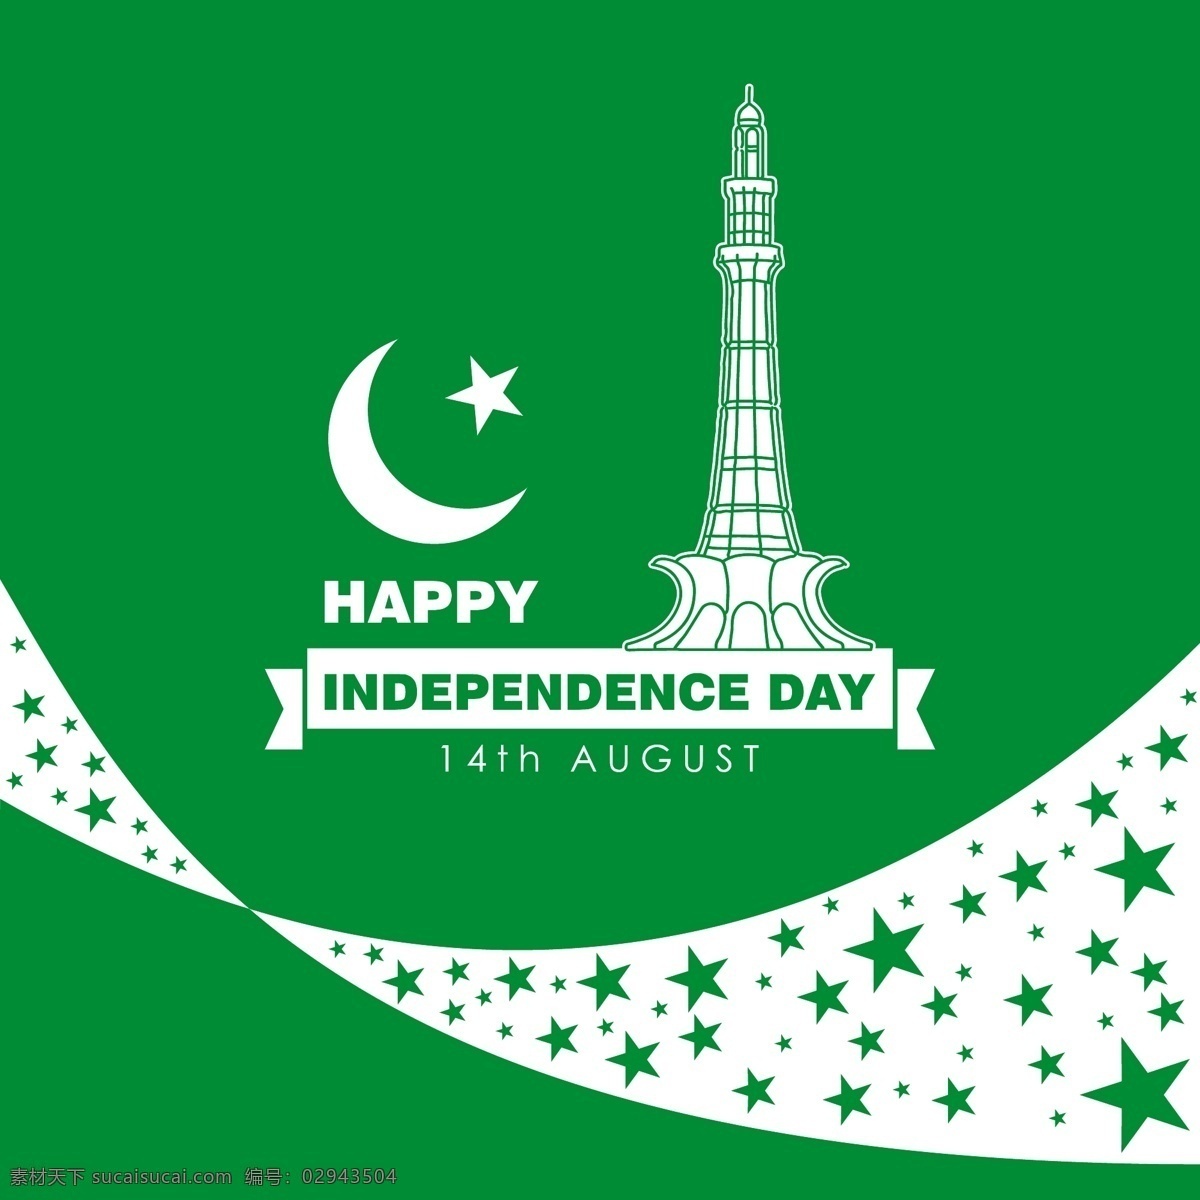 月 日 巴基斯坦 独立日 背景 横幅 传单 抽象 旅游 明星 卡 徽章 标志 绿色 模板 快乐 色彩 艺术 月亮 文本 庆典 节日